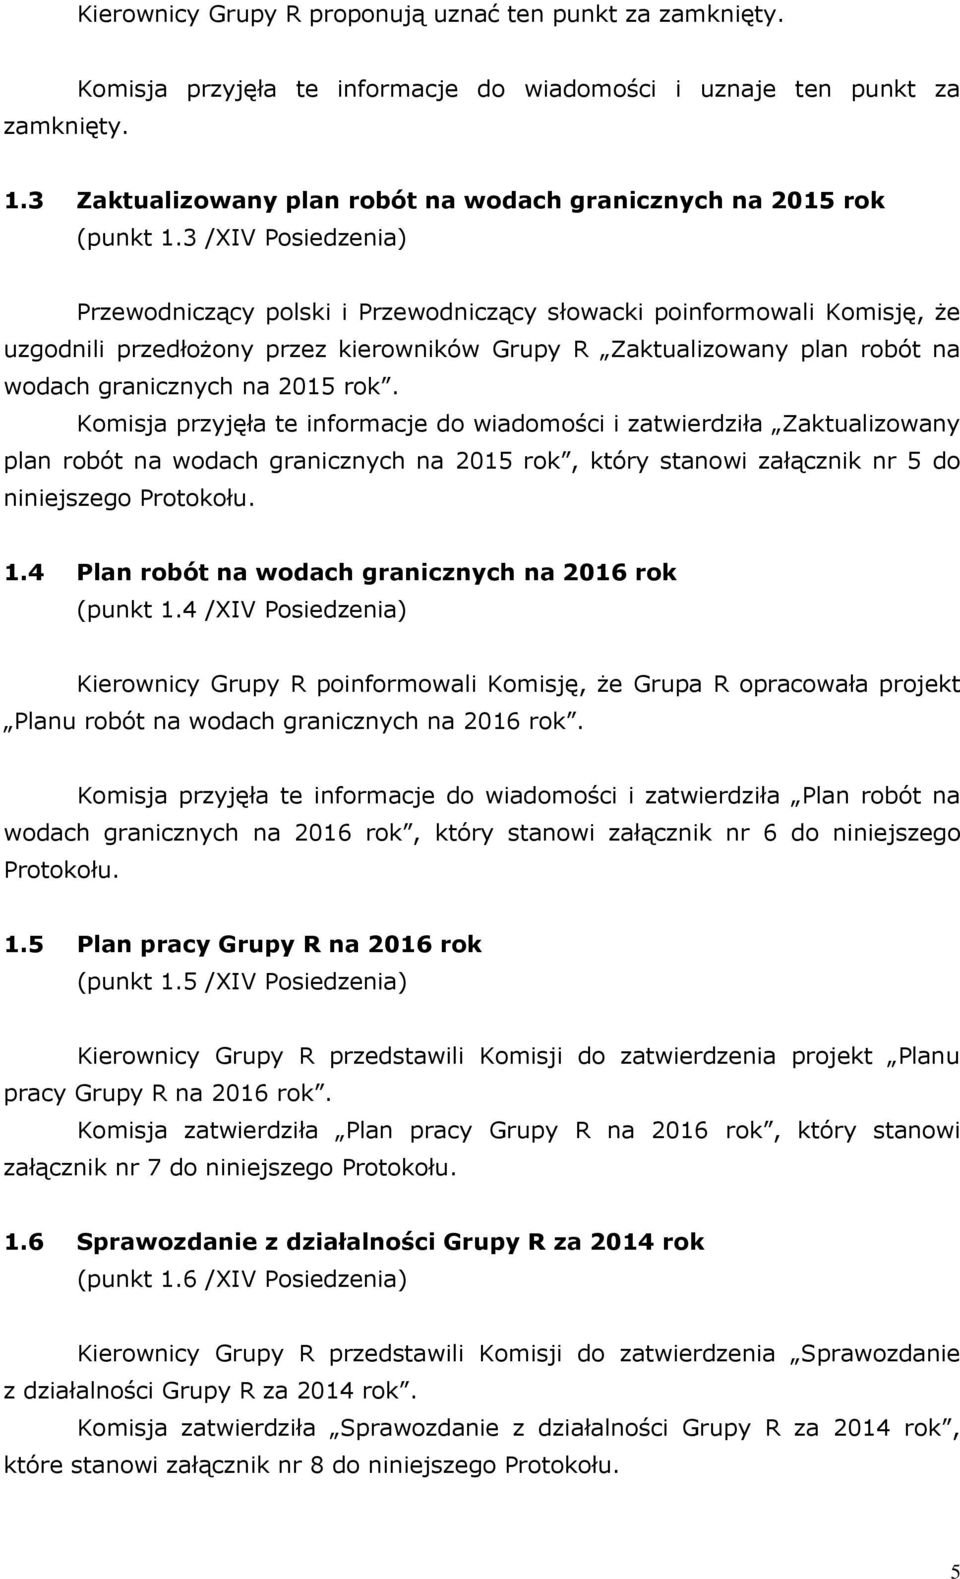 3 /XIV Posiedzenia) Przeodniczący polski i Przeodniczący słoacki poinformoali Komisję, że uzgodnili przedłożony przez kieronikó Grupy R Zaktualizoany plan robót na odach granicznych na 2015 rok.